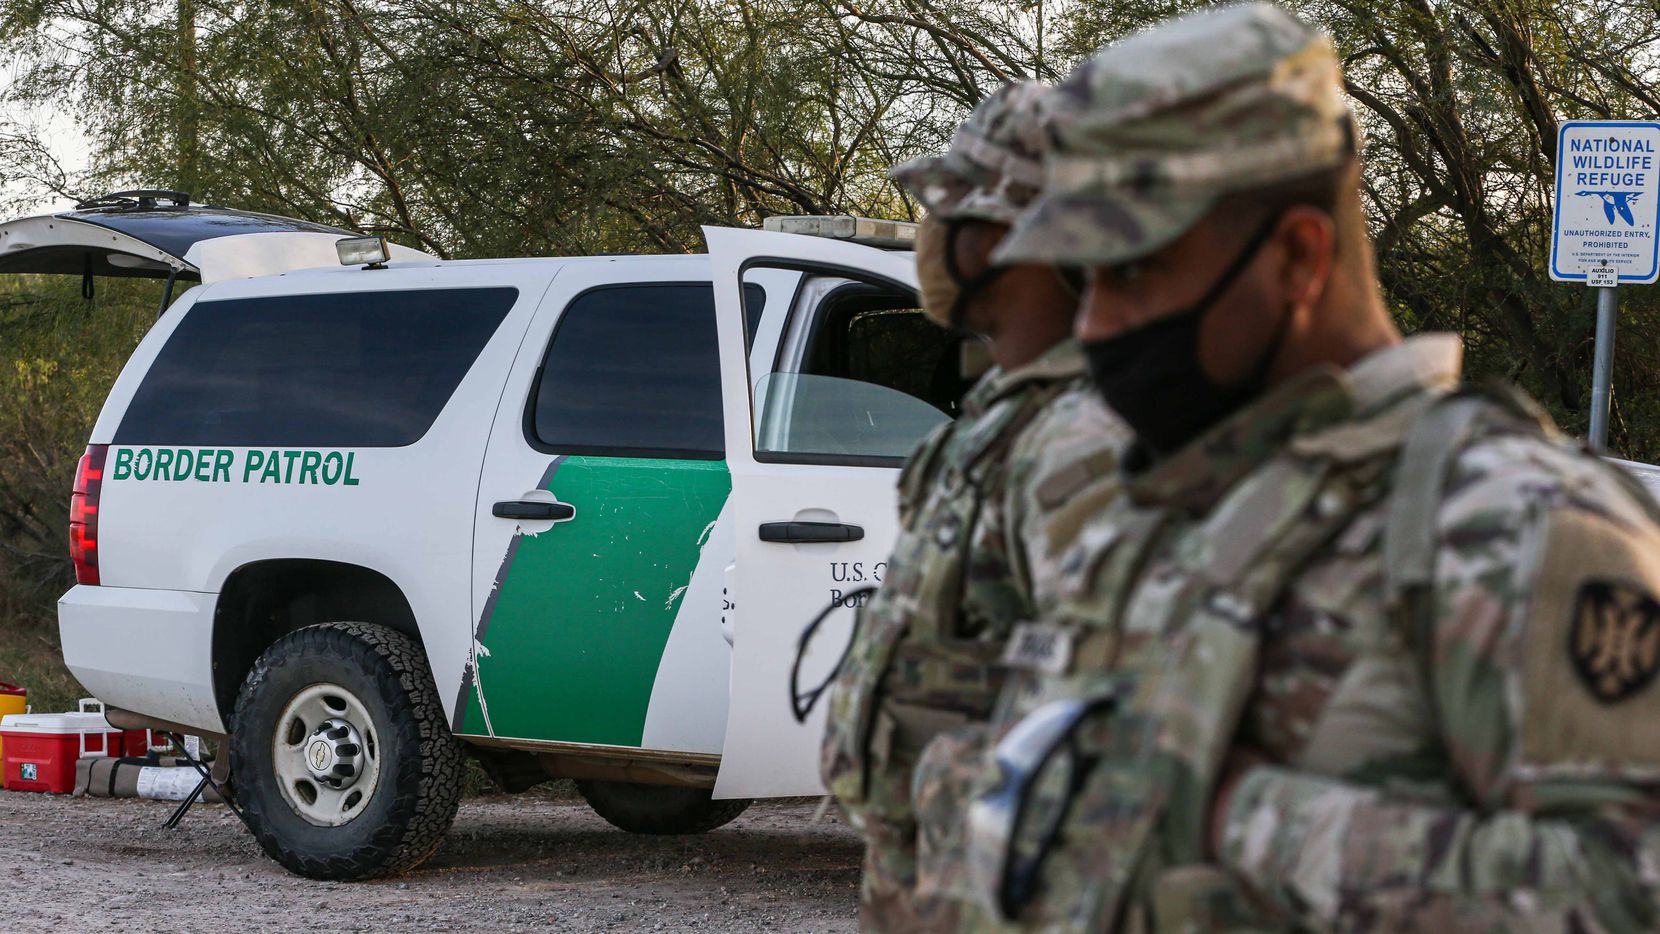 “Serán enviados de regreso”, advierte patrulla fronteriza de EE.UU